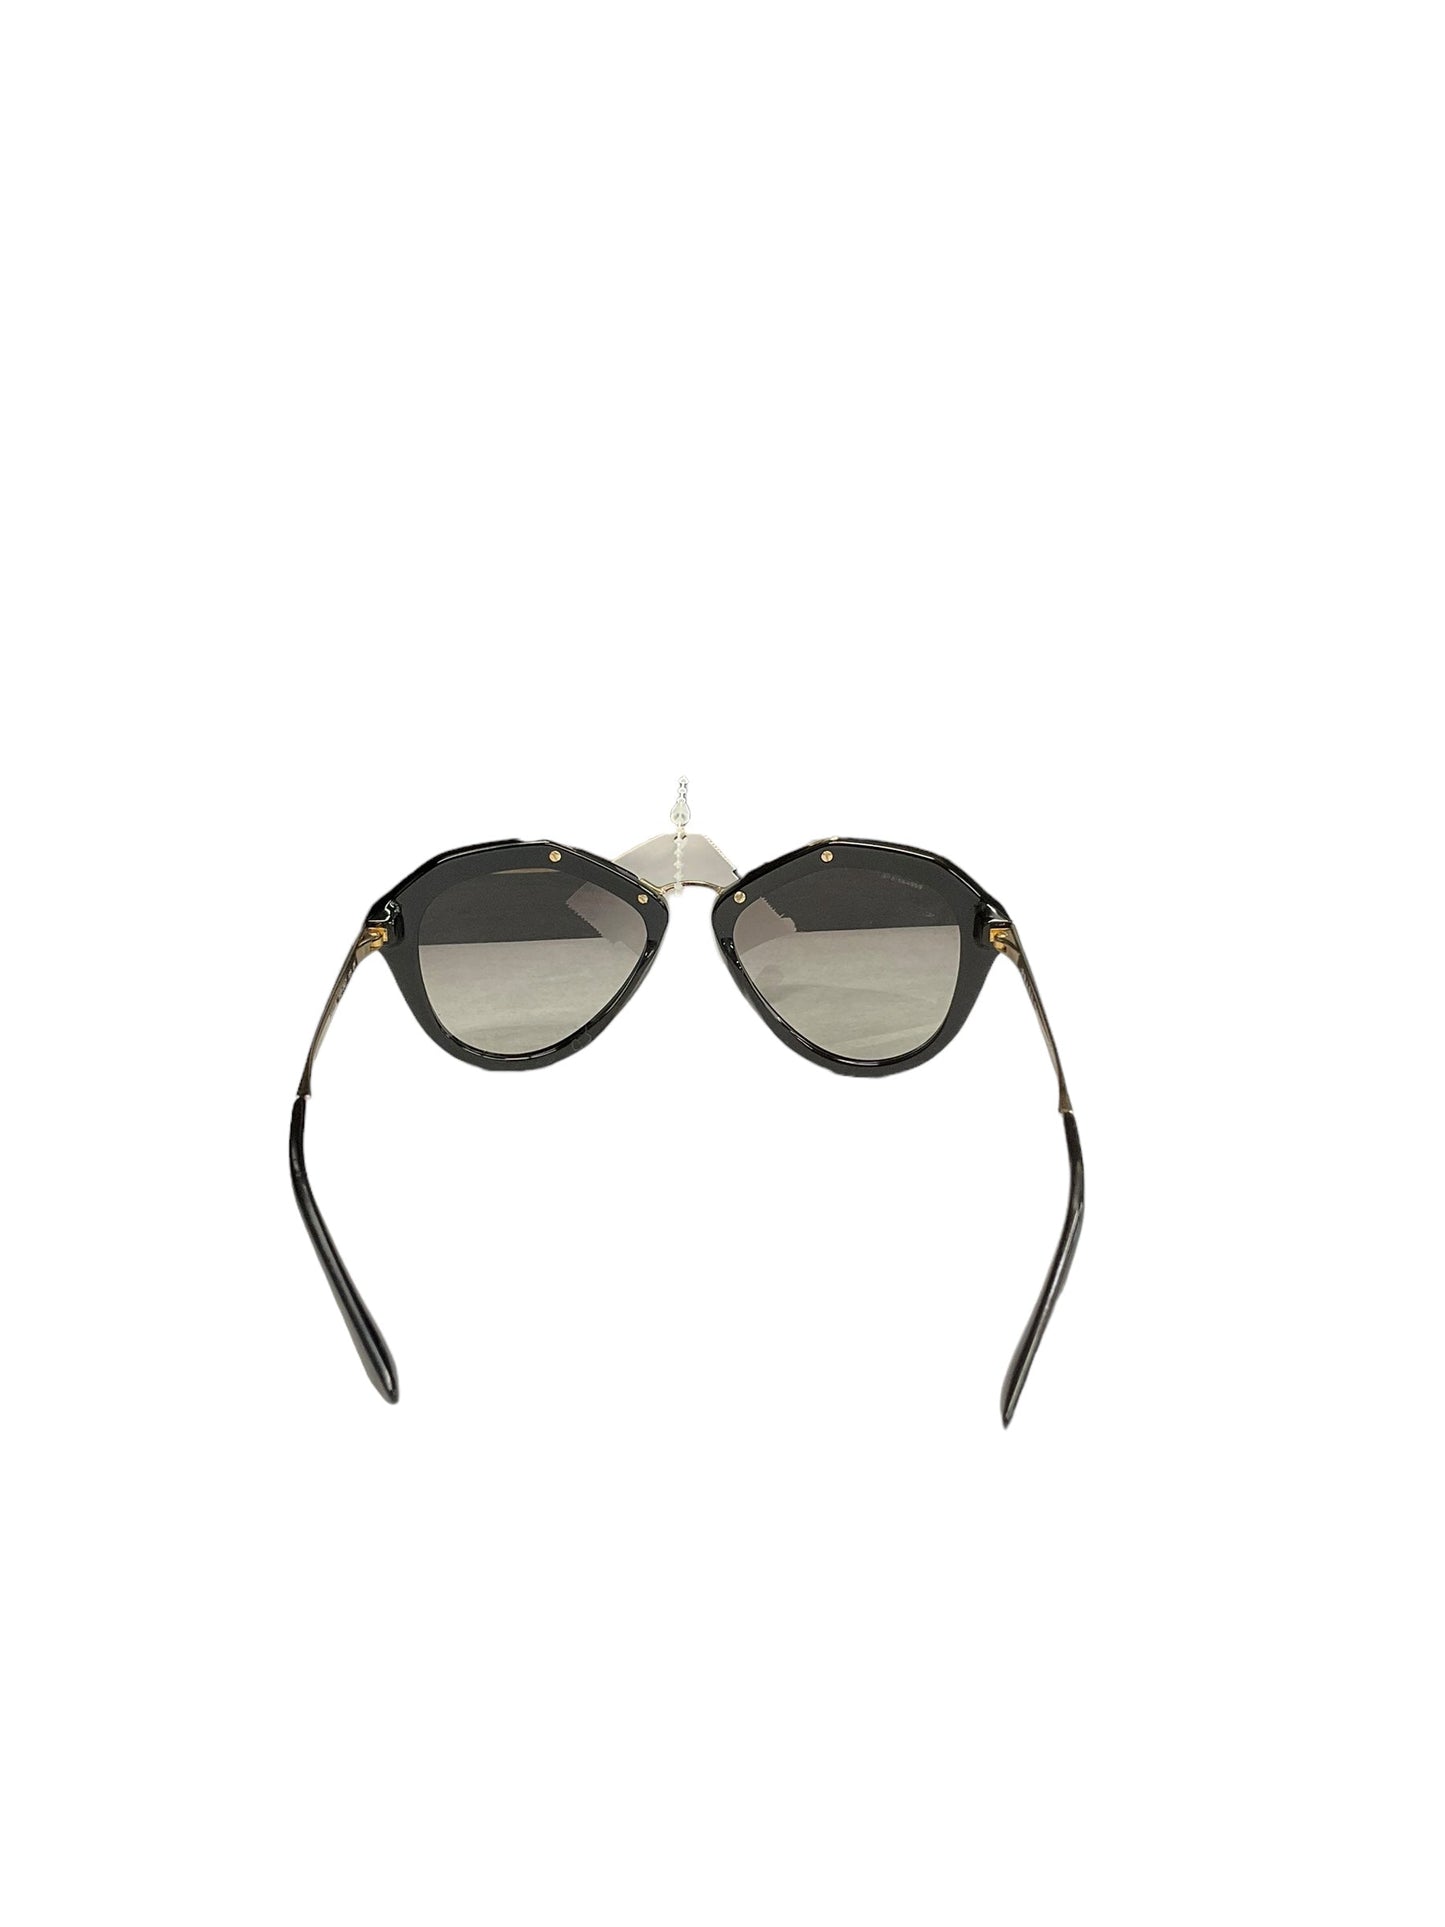 Sunglasses Luxury Designer Prada